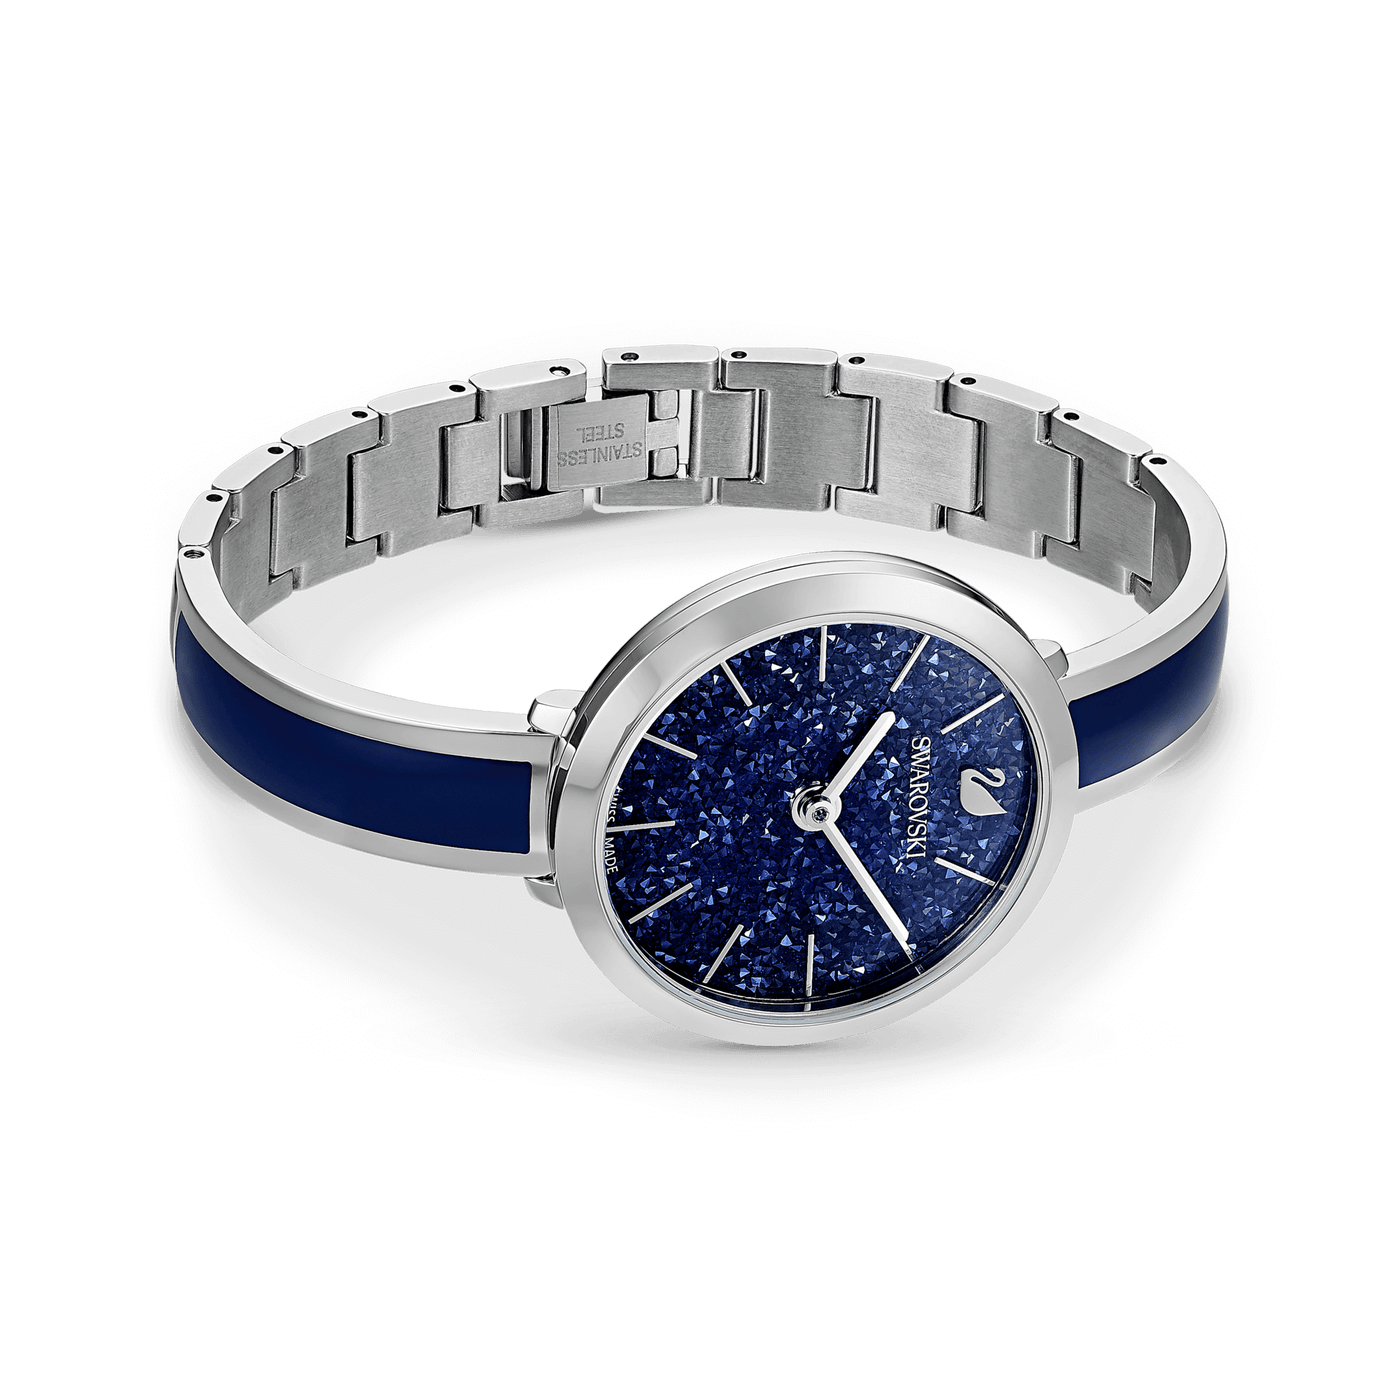 SWAROVSKI שעון Crystallne Delight כחול